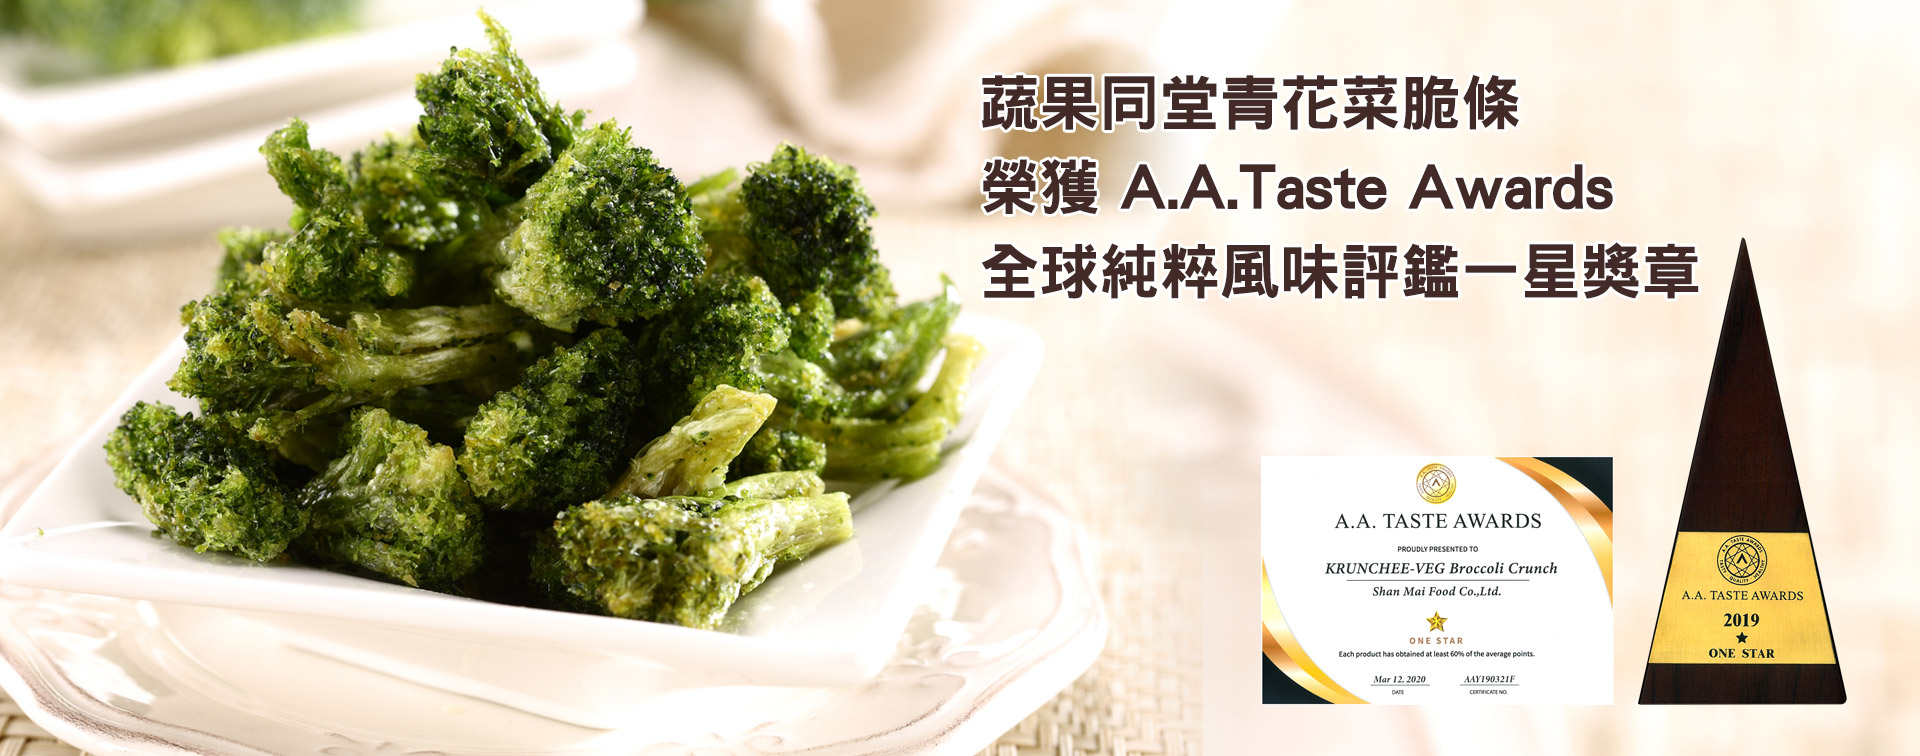 先麥蔬果同堂產品榮獲A.A.Taste Awards全球純粹風味評鑑星等獎